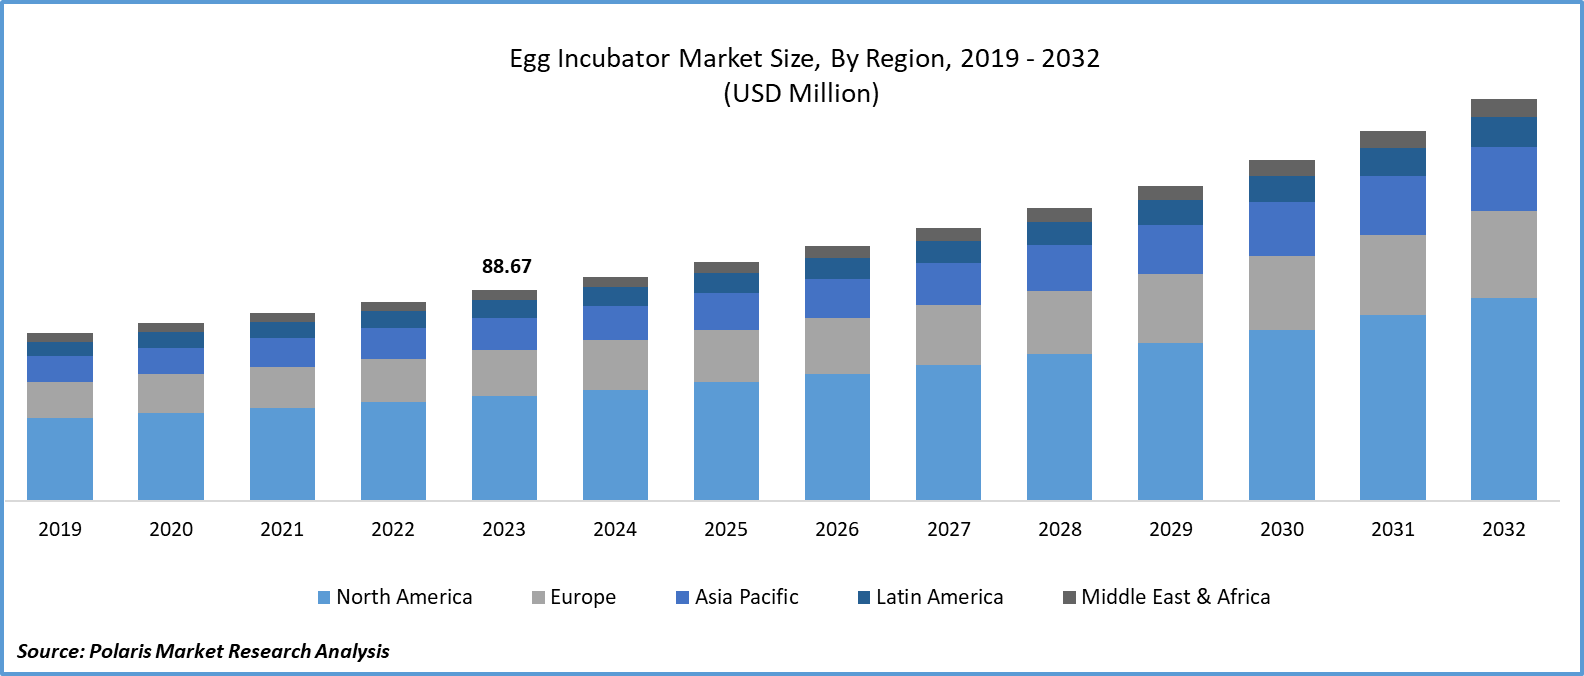 Egg Incubator Market Size